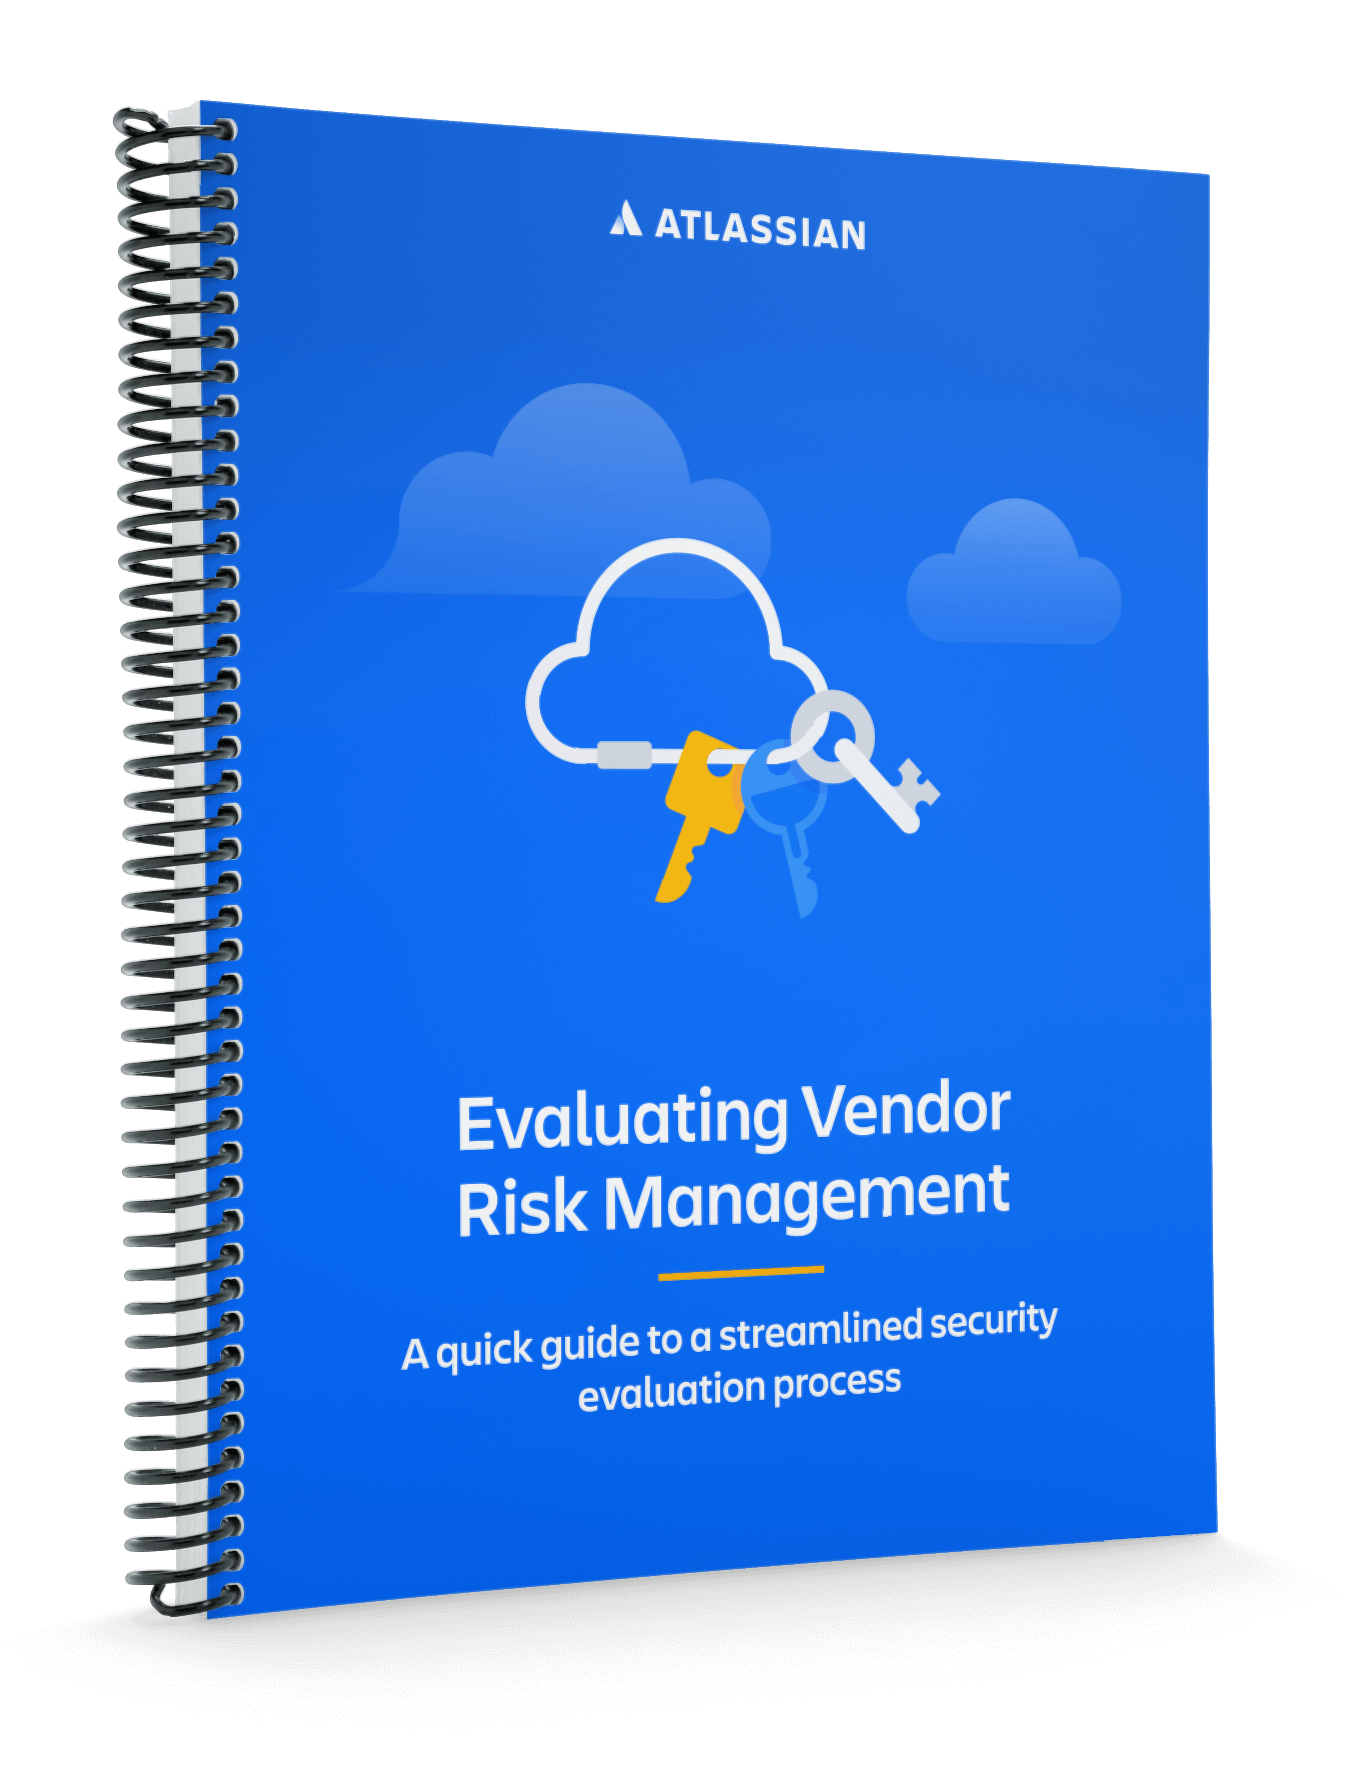 O Guia da Atlassian para avaliar a gestão de riscos de fornecedores